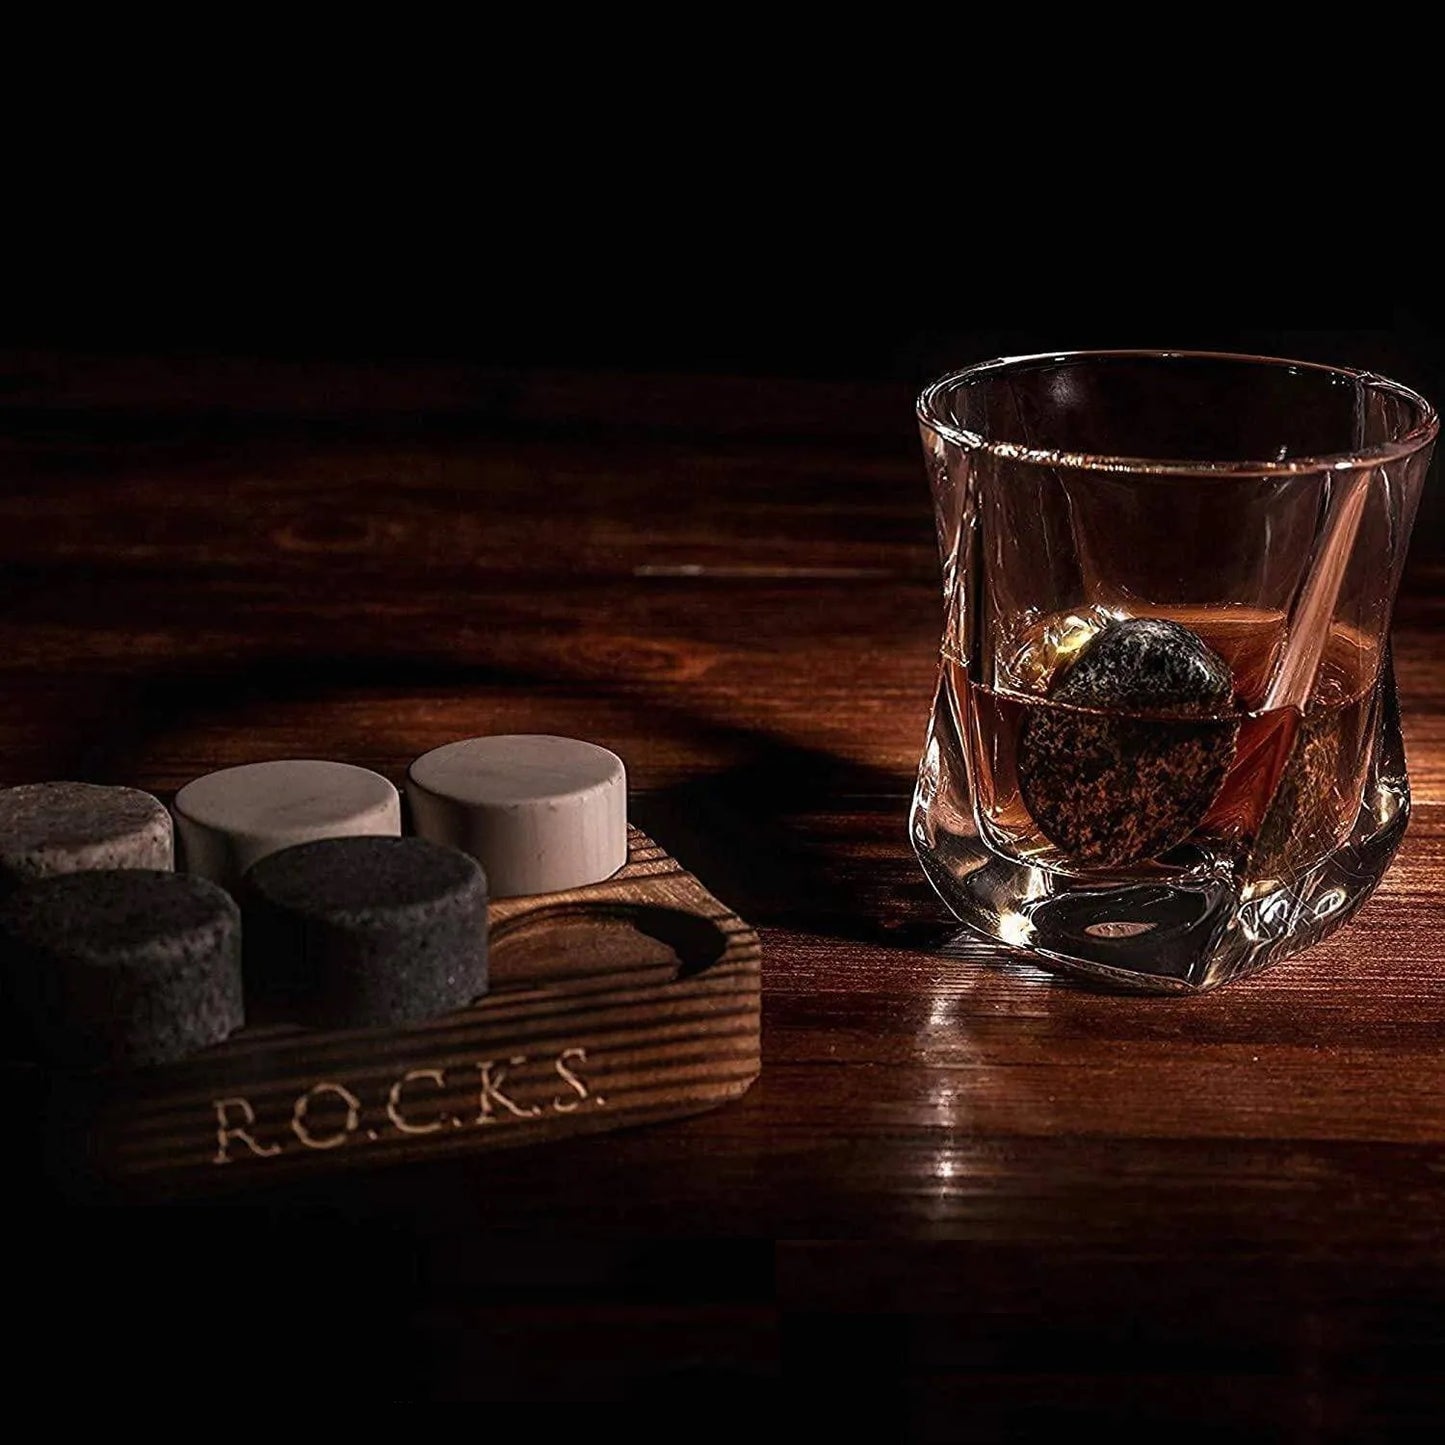 Twist Whiskyglas mit Whisky gefüllt und einem Kühlstein im Glas neben den restlichen Steinen wird von Licht angestrahlt